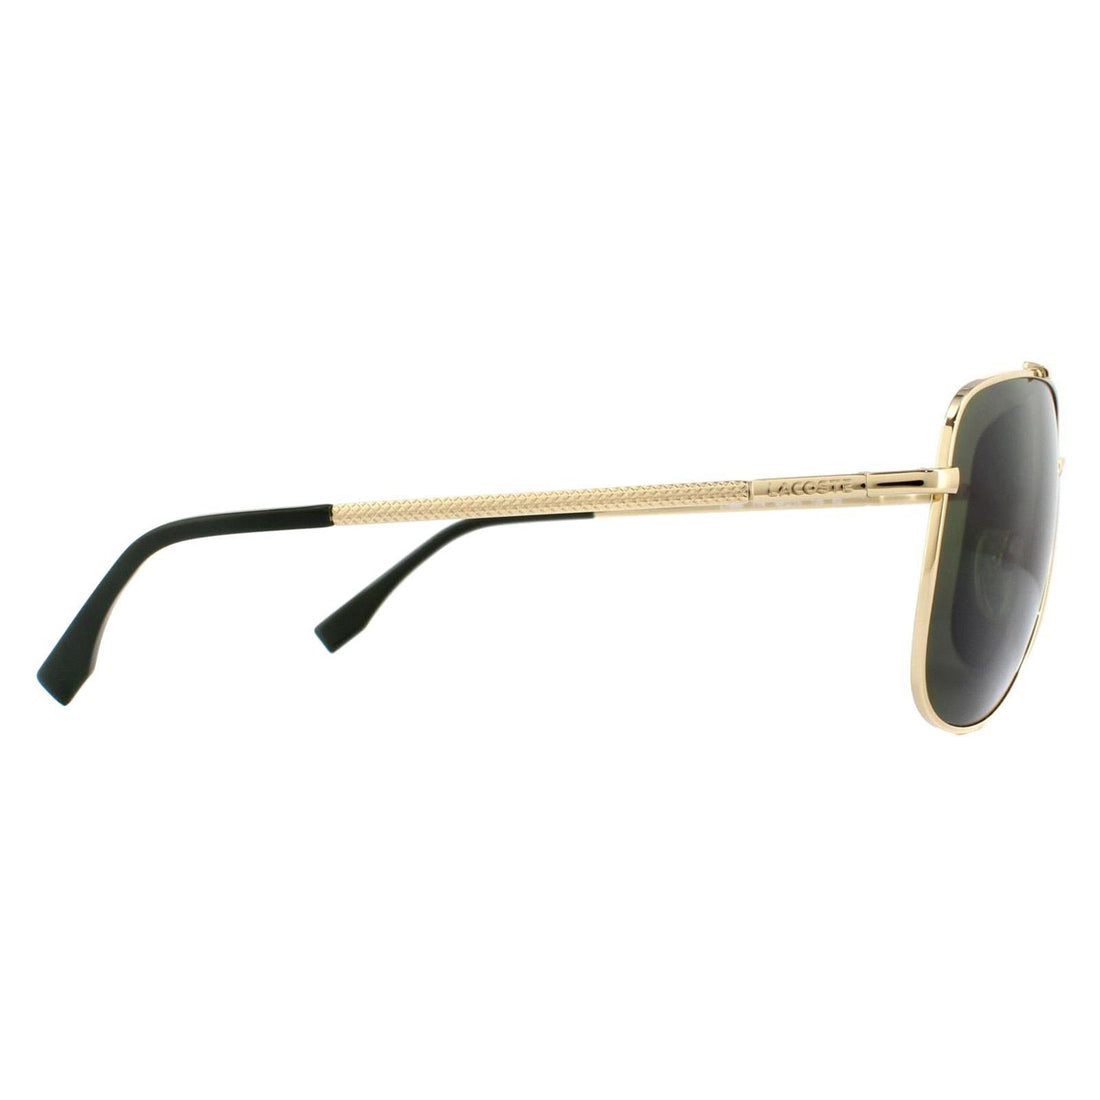 Lacoste L188S Sunglasses